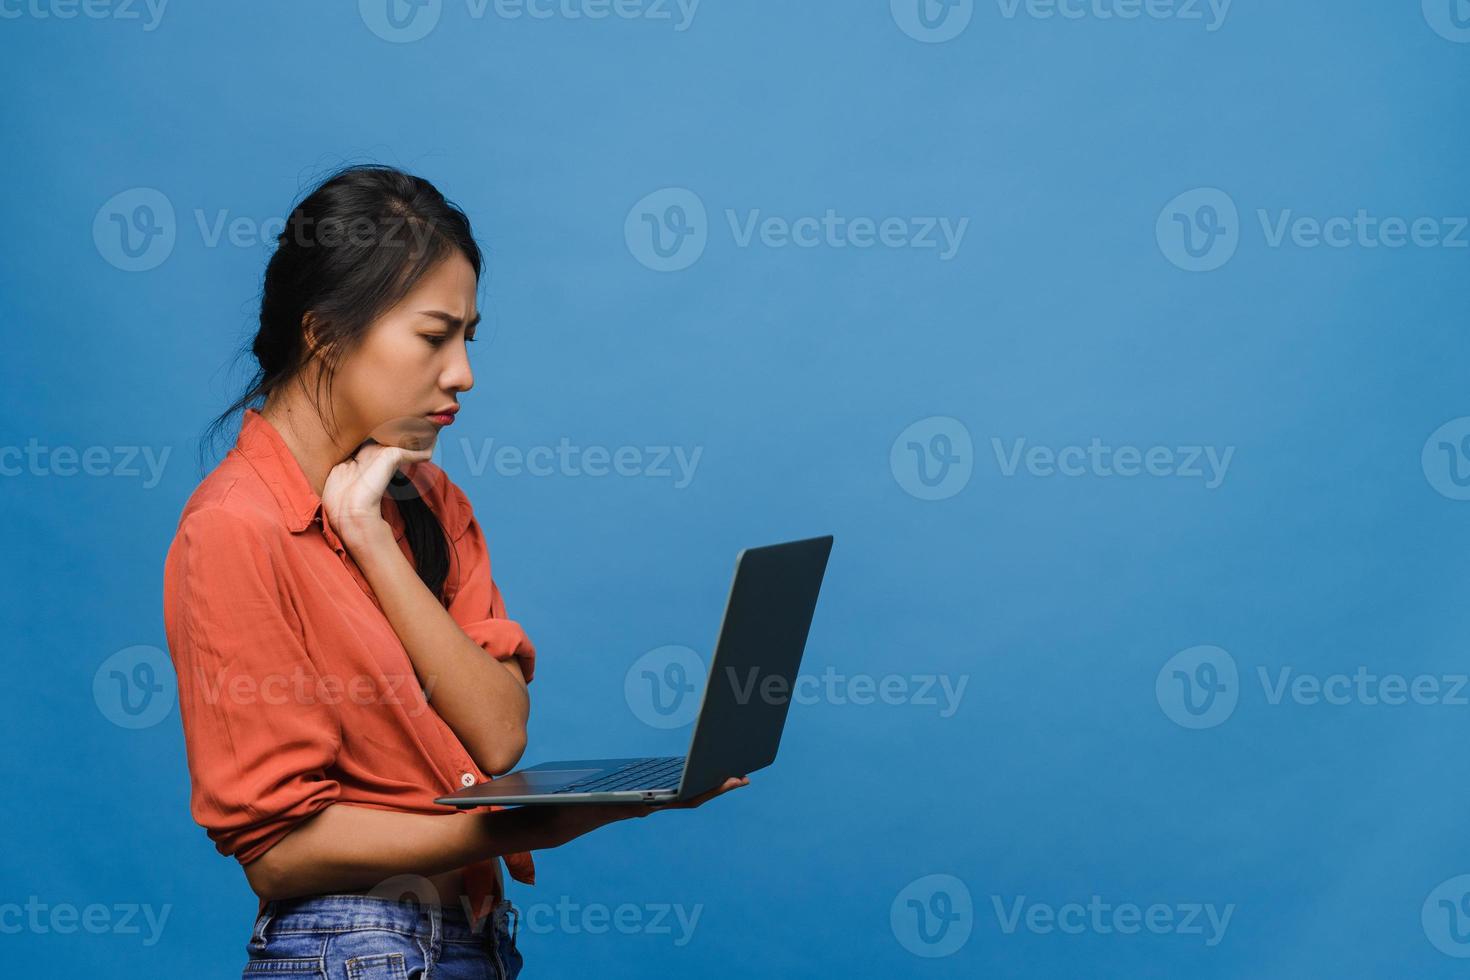 giovane donna asiatica che usa il computer portatile con espressione negativa, urla eccitate, piangi emotivamente arrabbiato in un panno casual e stai isolato su sfondo blu con spazio vuoto per la copia. concetto di espressione facciale. foto